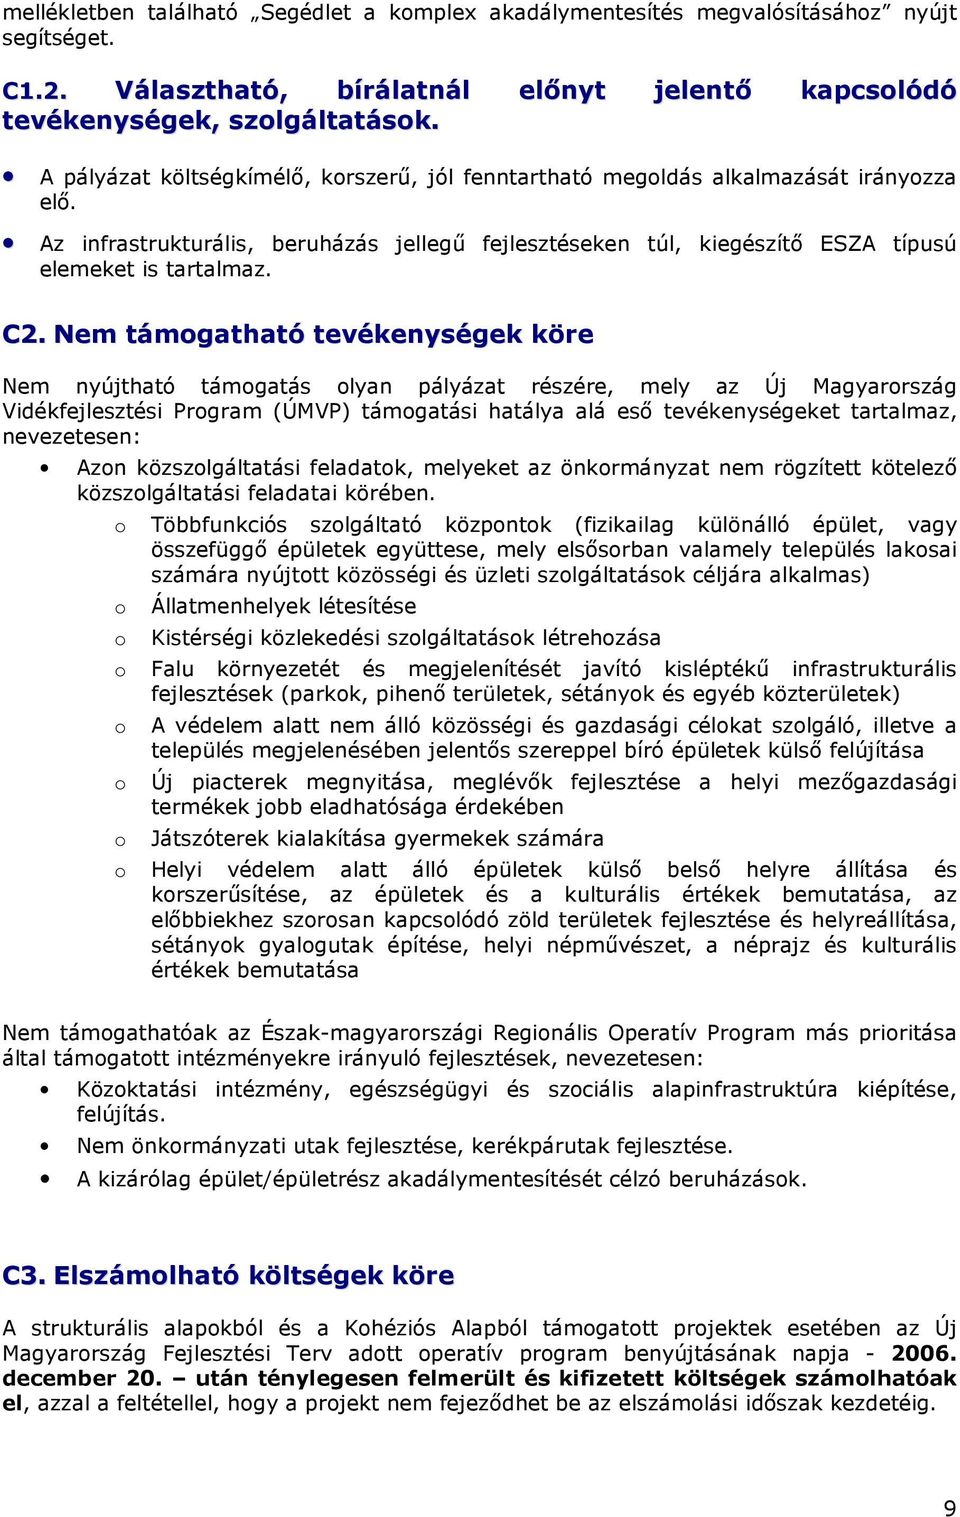 Nem támgatható tevékenységek köre Nem nyújtható támgatás lyan pályázat részére, mely az Új Magyarrszág Vidékfejlesztési Prgram (ÚMVP) támgatási hatálya alá esı tevékenységeket tartalmaz, nevezetesen: